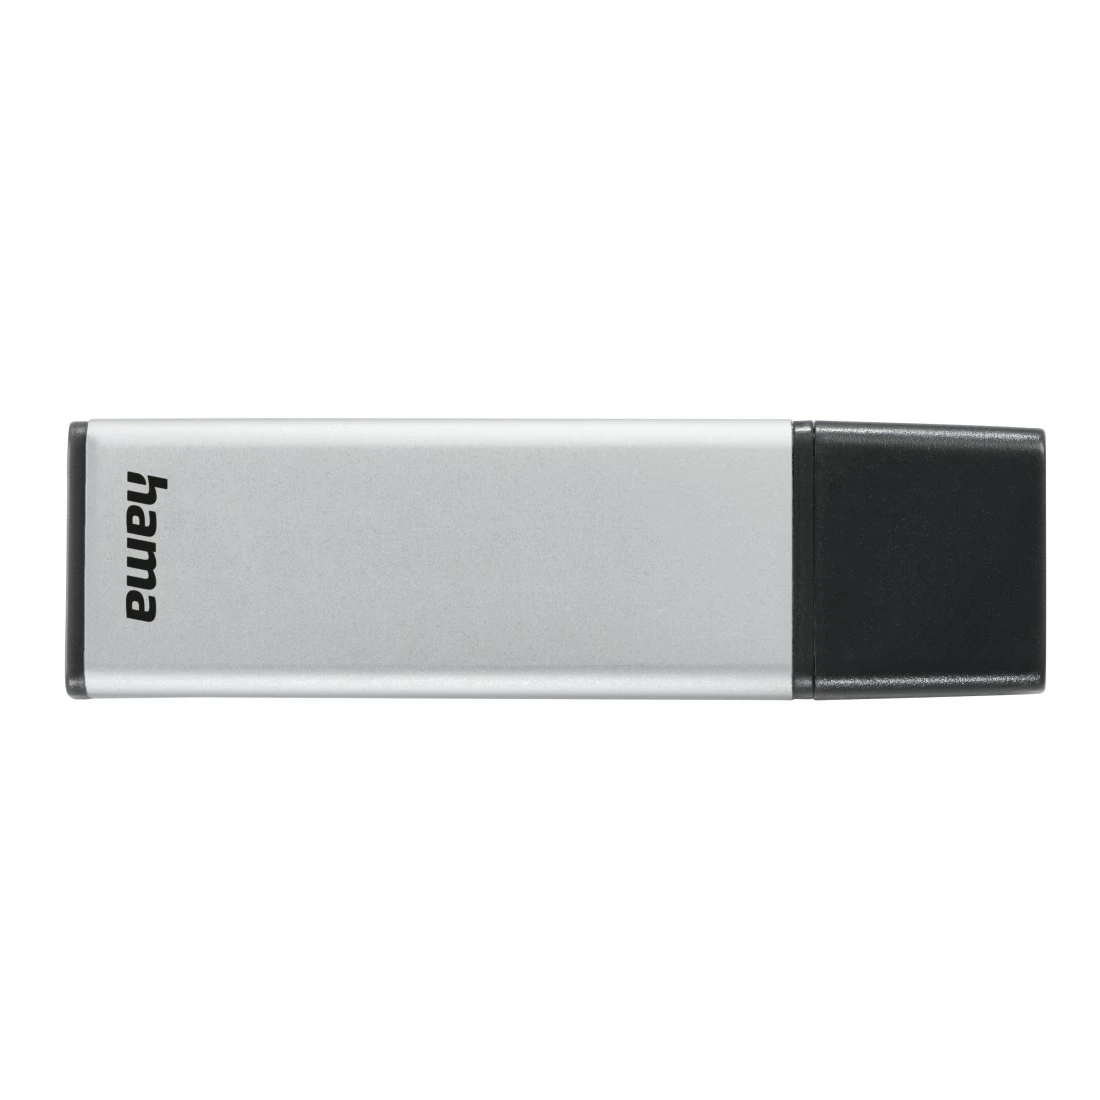 Hama 00181051 Classic USB Stick, USB 3.0, 16 GB, 70 MB/s, silver